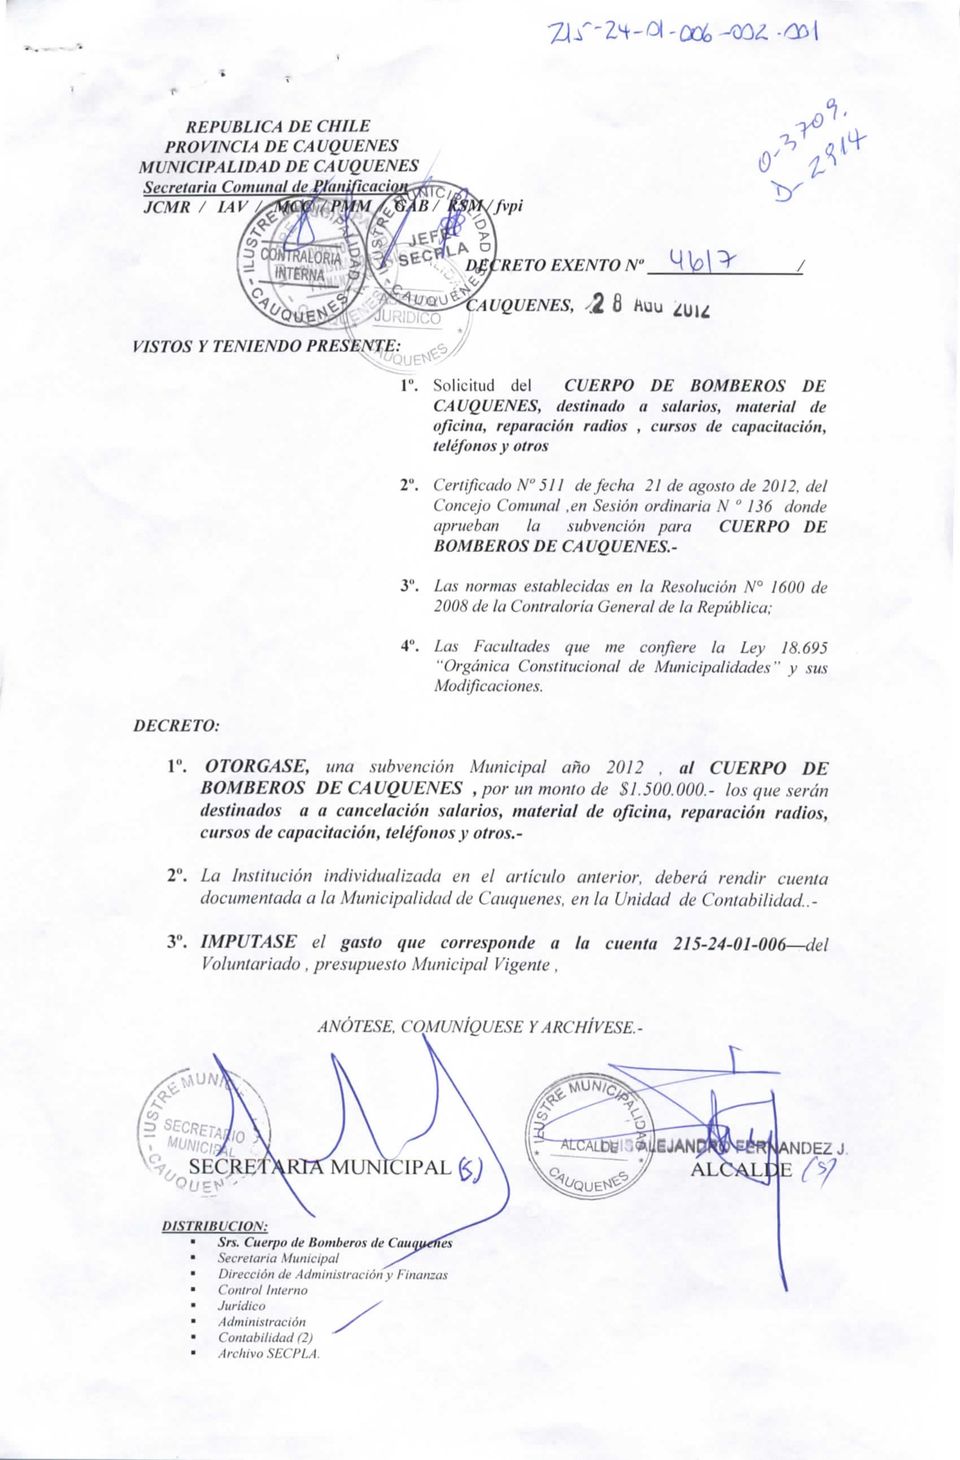 Certificado N 51 / de fecha 21 de agosto de 2012, del Concejo Comunal,en Sesión ordinaria N 136 donde aprueban la subvención para CUERPO DE BOMBEROS DE CAUQUENES.- 3".